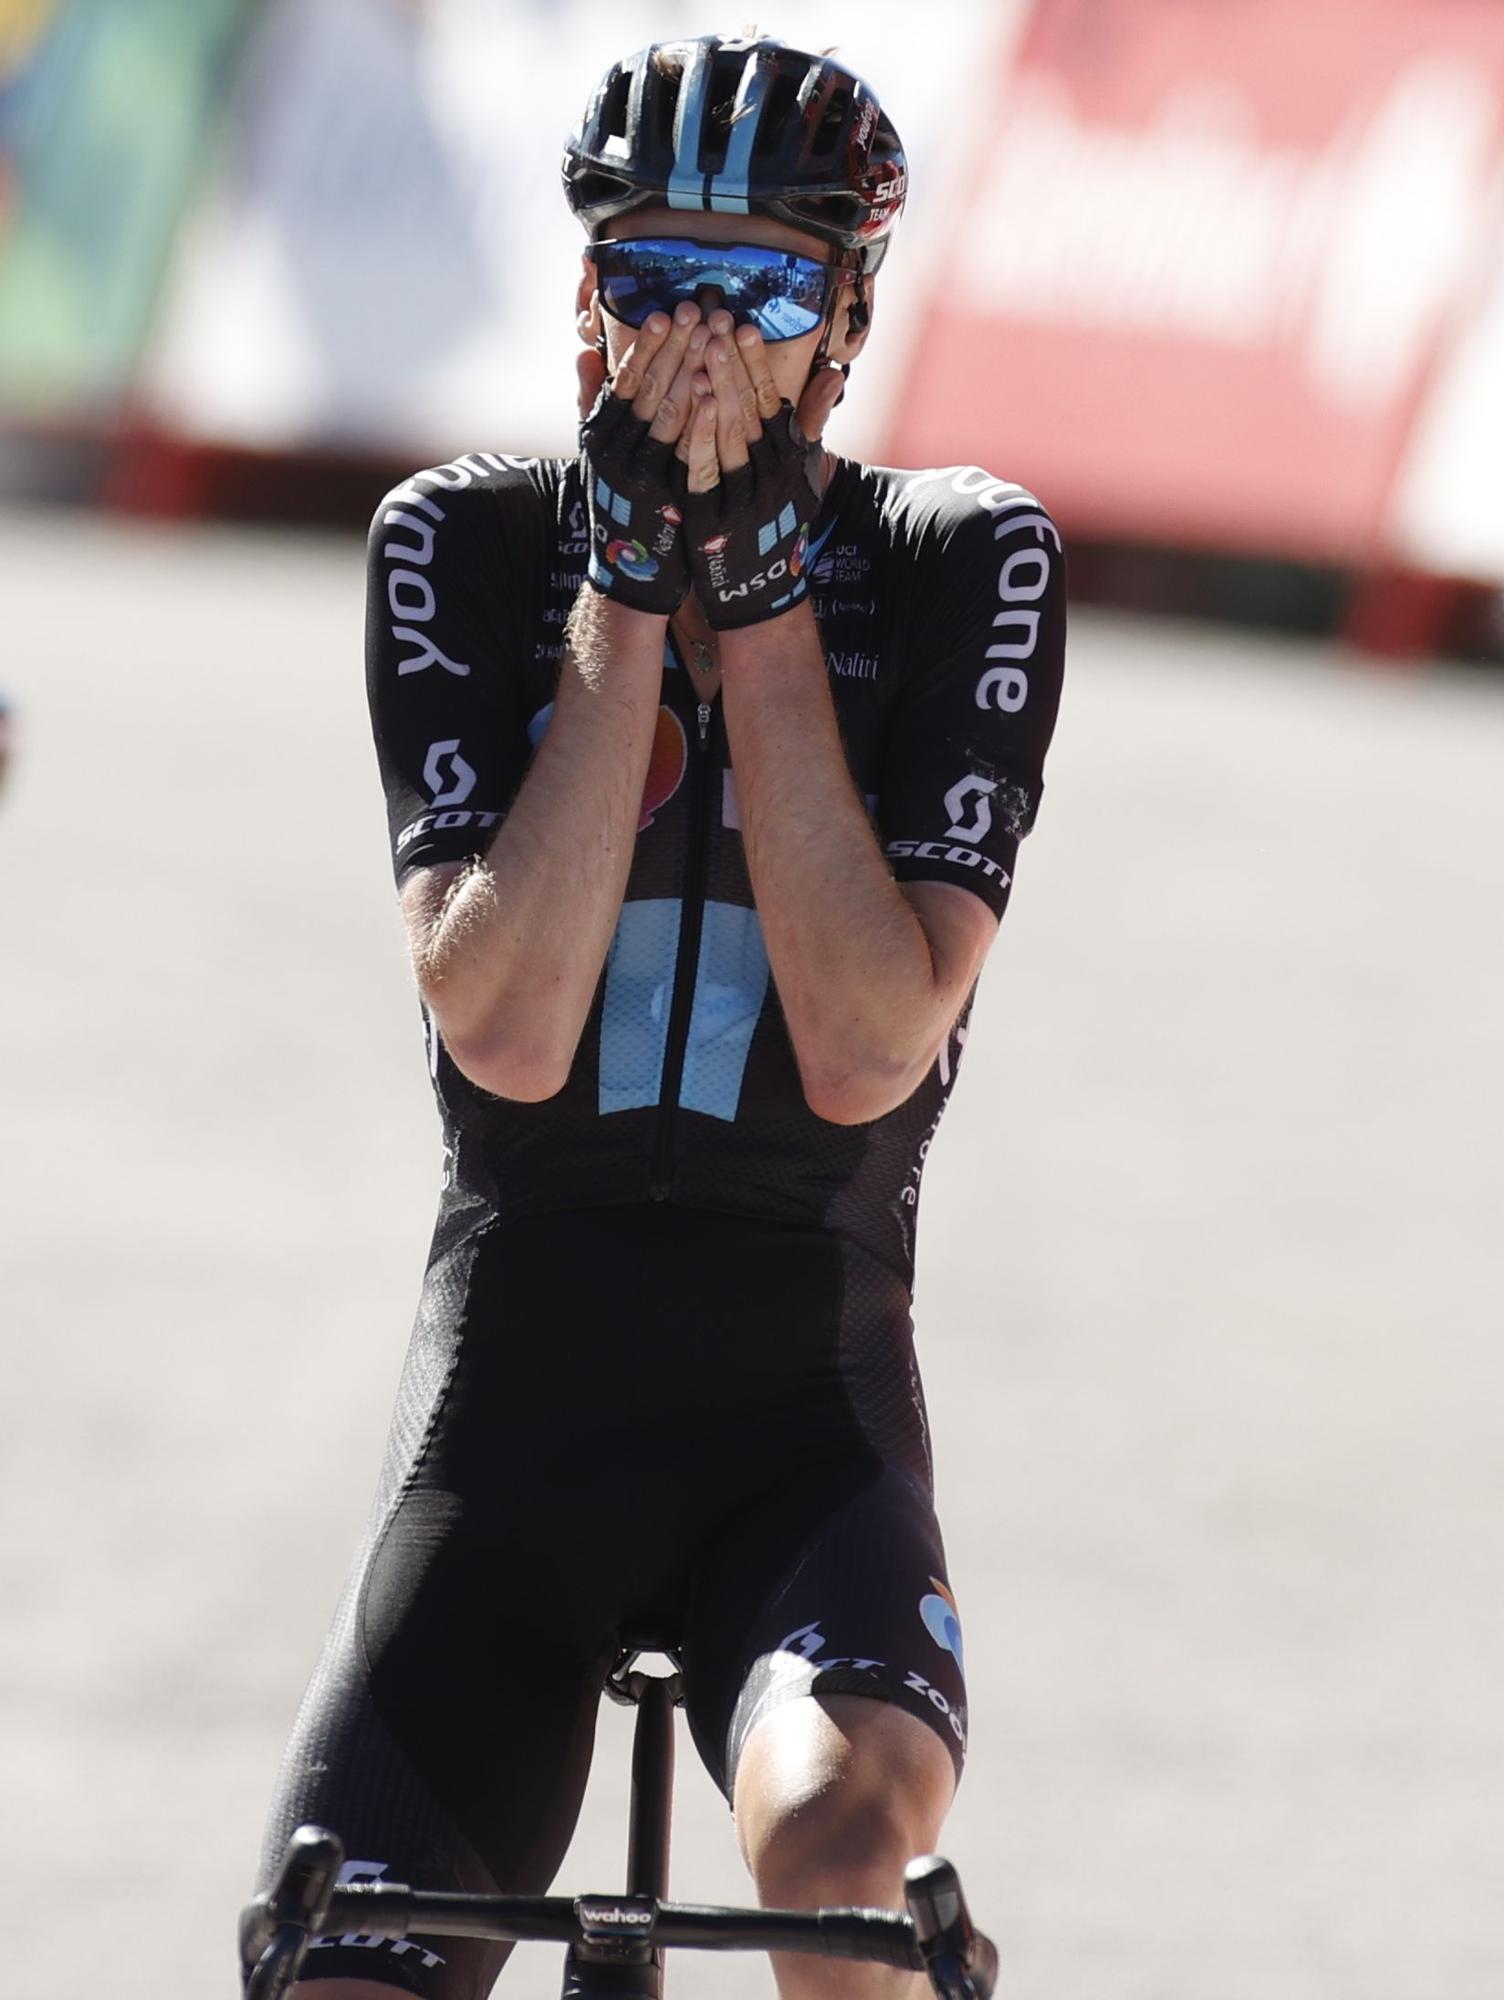 Etapa 15 de la Vuelta a España, en imágenes